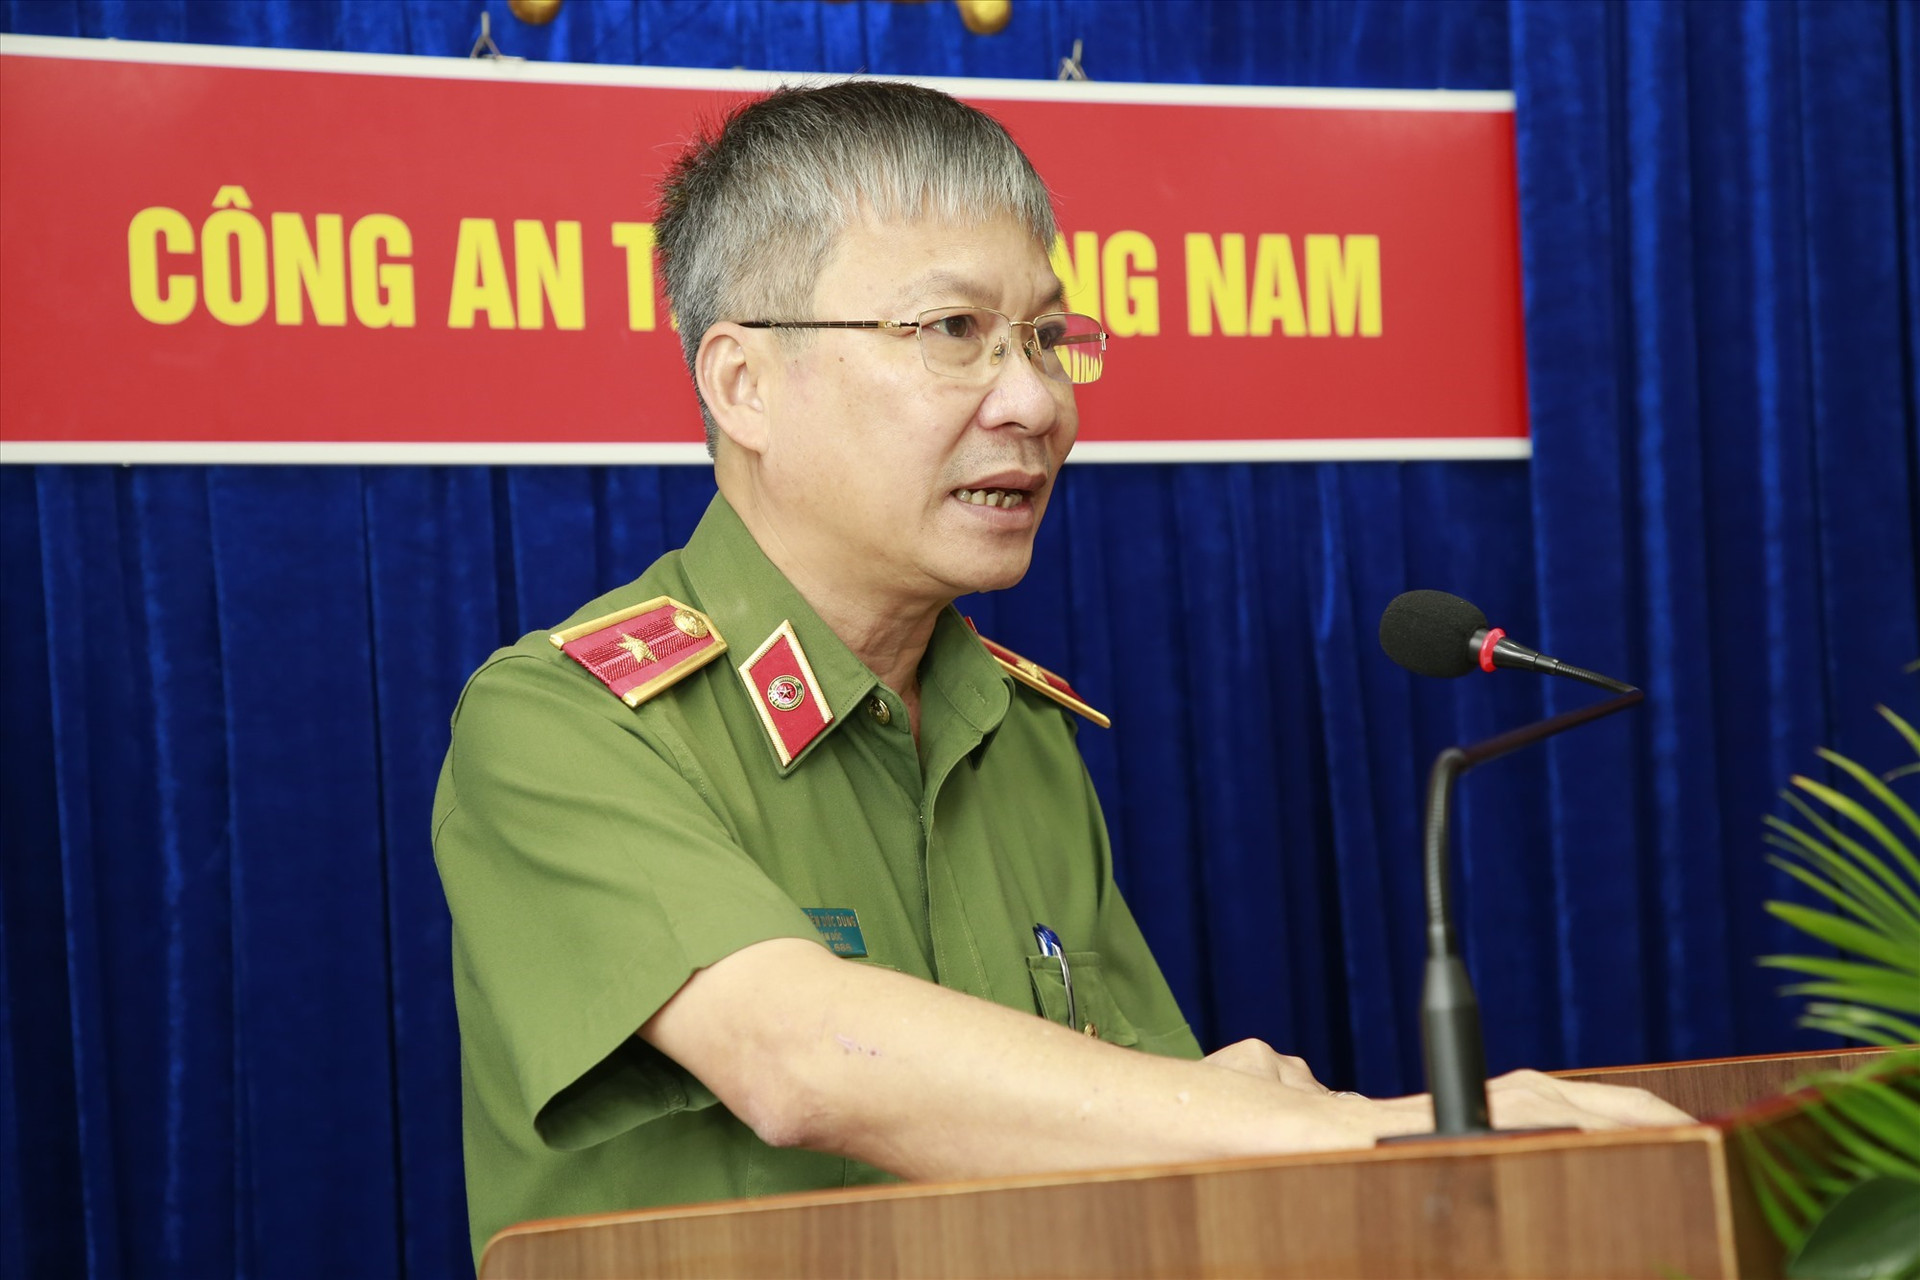 Thiếu tướng Nguyễn Đức Dũng phát biểu khai mạc hội nghị. Ảnh: T.C